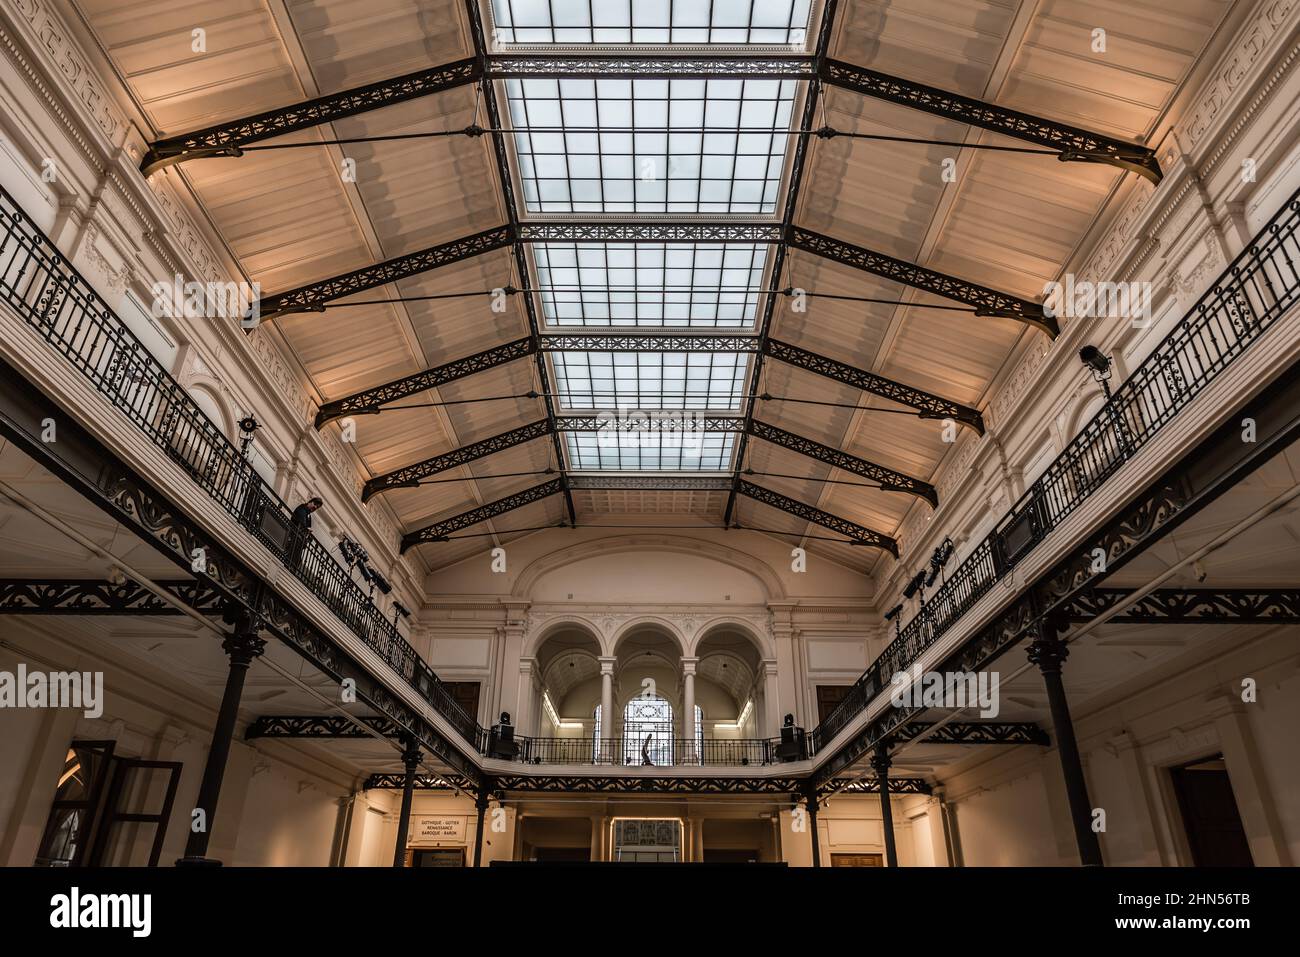 Bruxelles, Belgique - 11 11 2018 : vue intérieure de la salle principale du musée royal d'Art et d'Histoire Banque D'Images